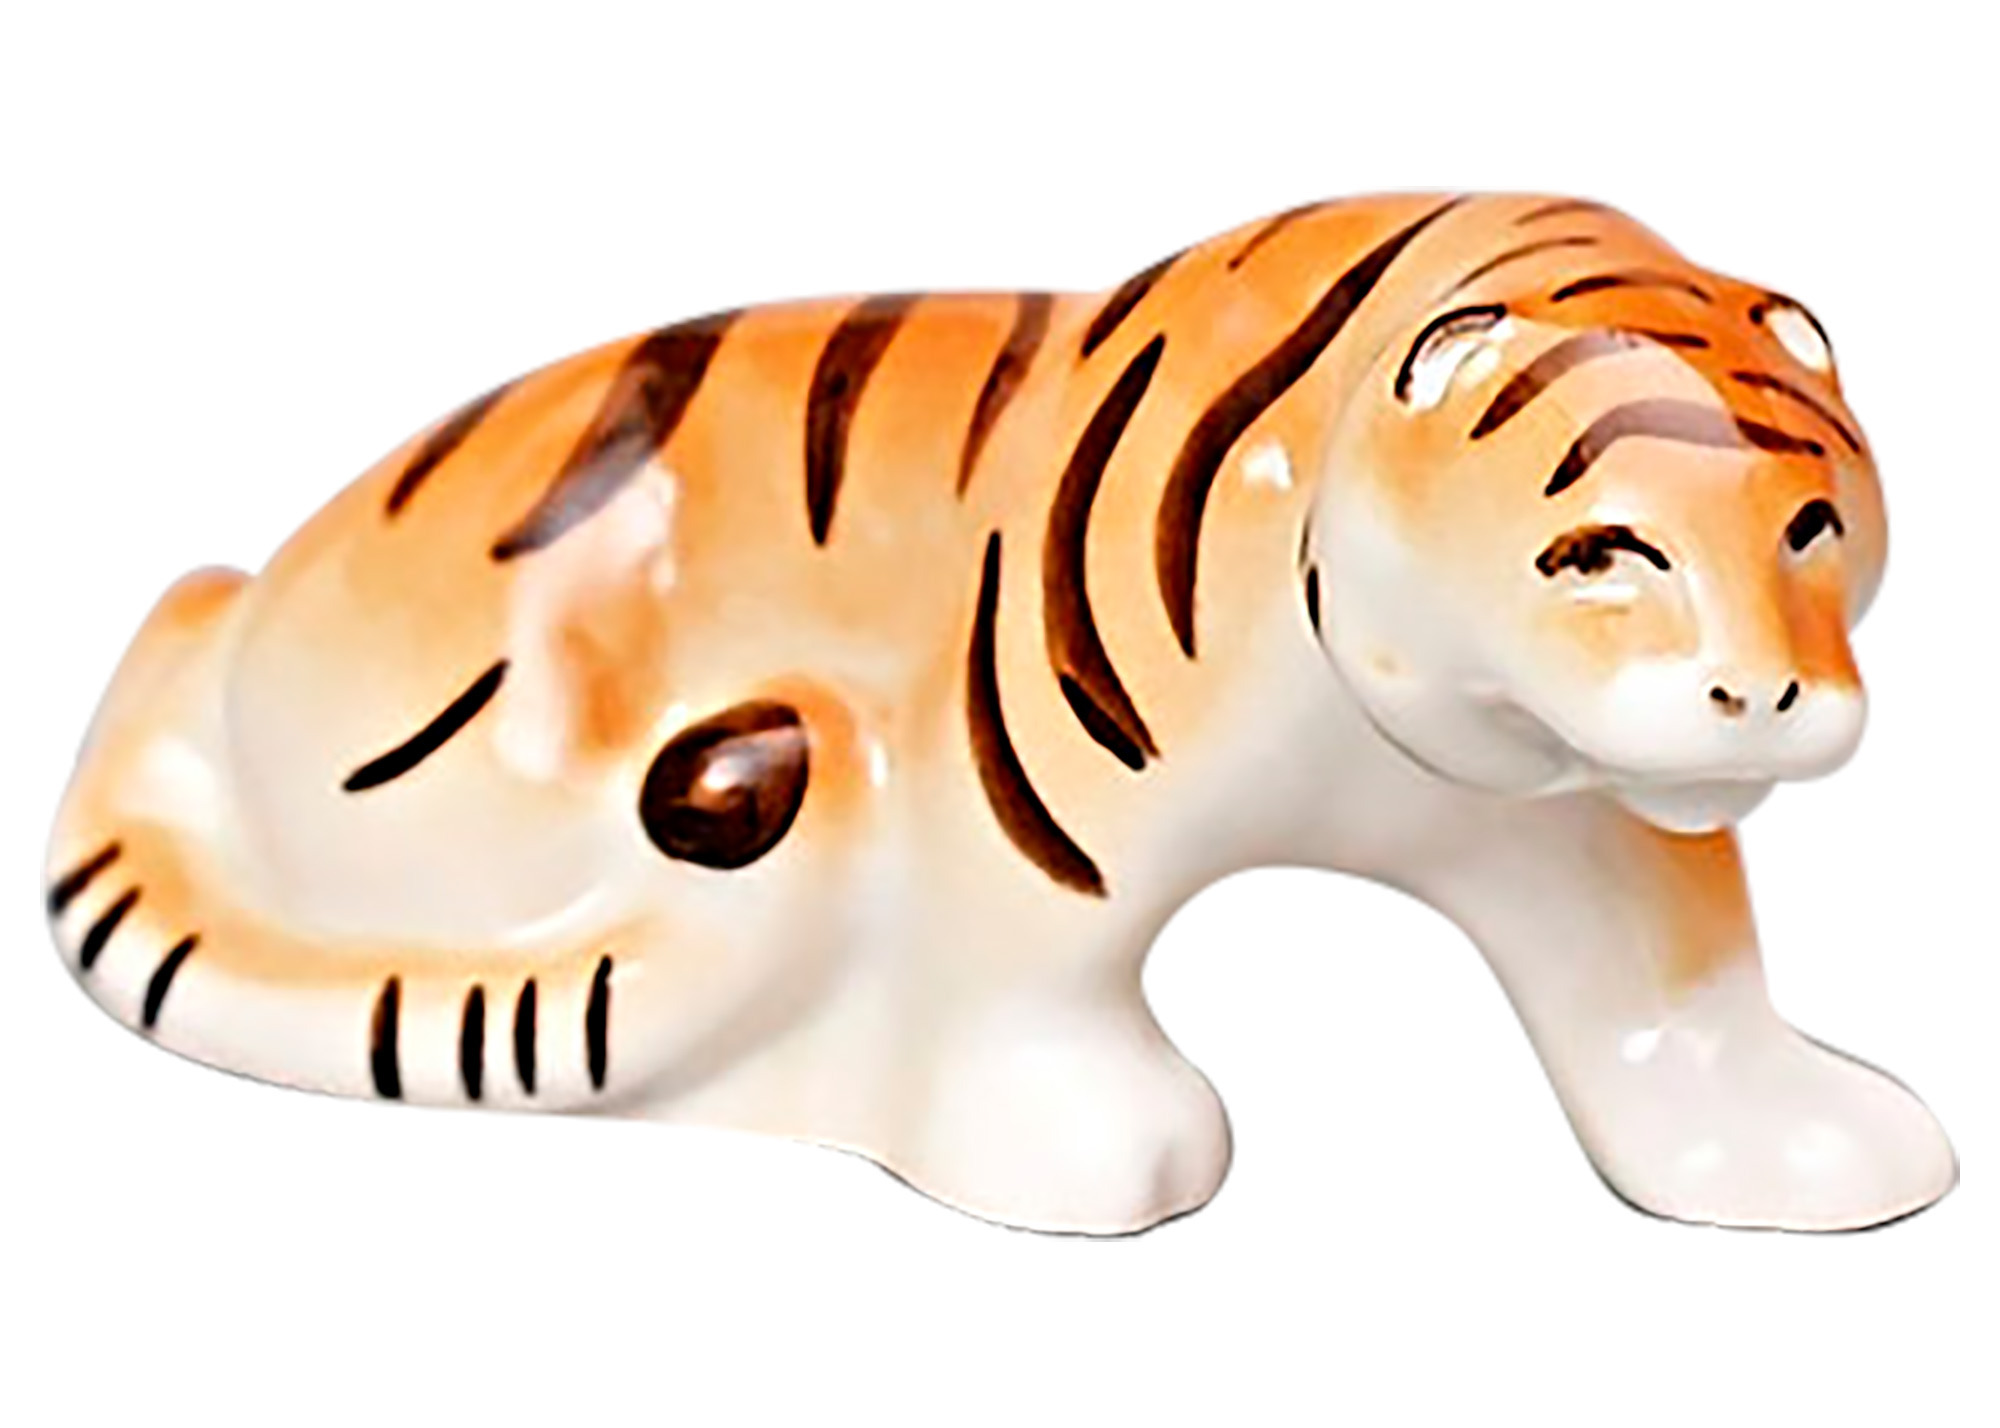 Buy Фарфоровая статуэтка "Крадущийся тигр" at GoldenCockerel.com